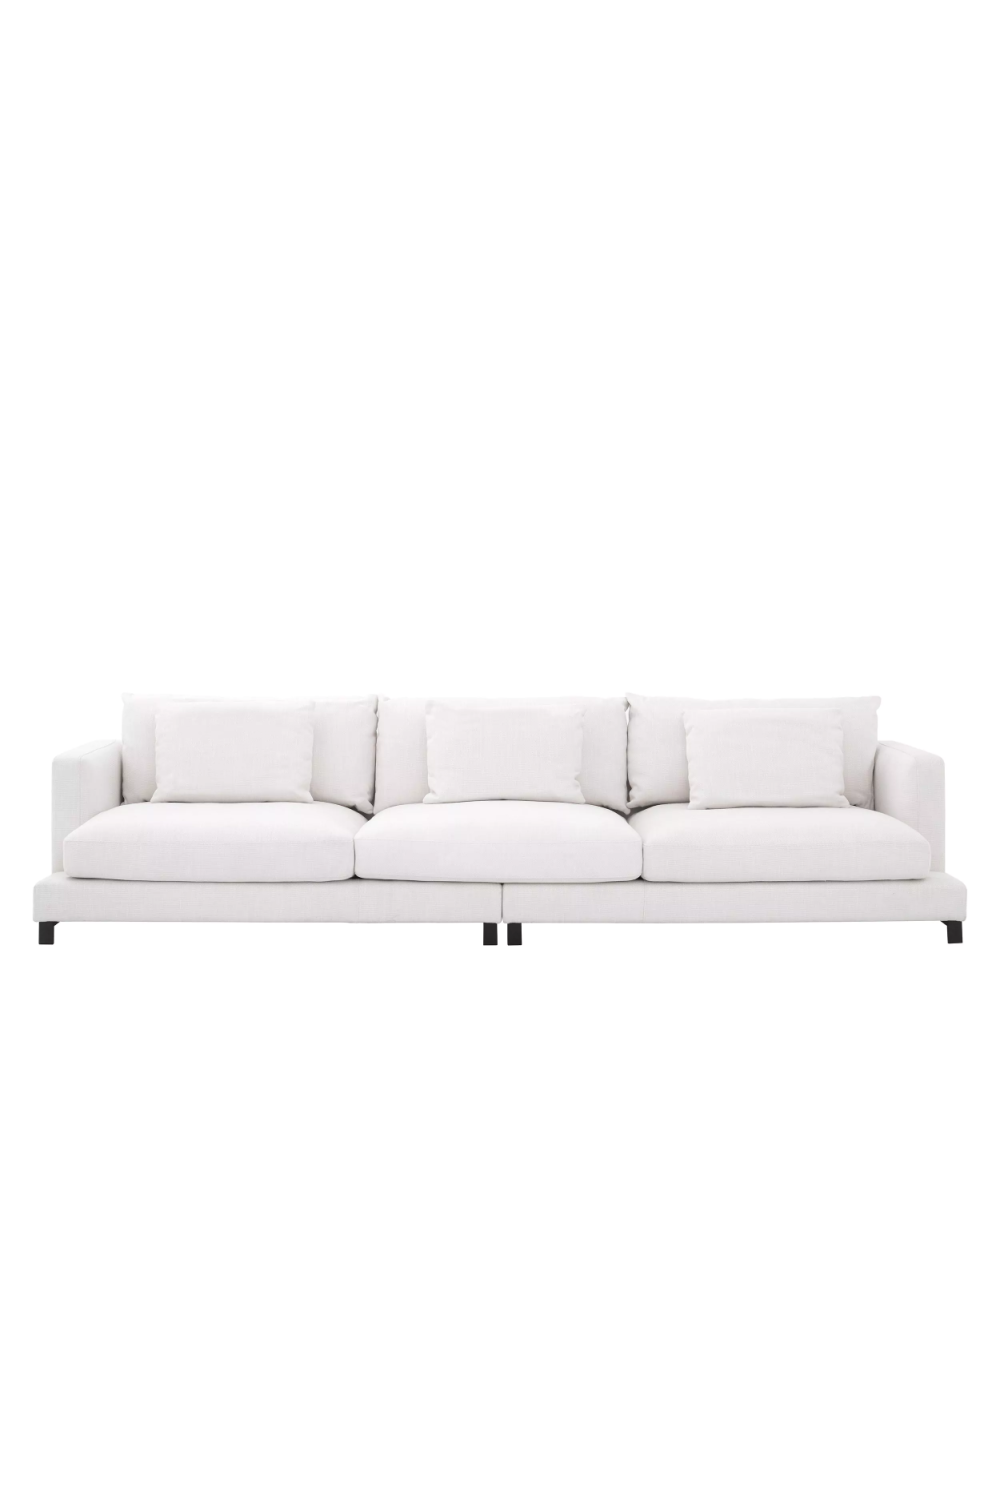 Image of Modern White Accent Sofa | Eichholtz Burbury